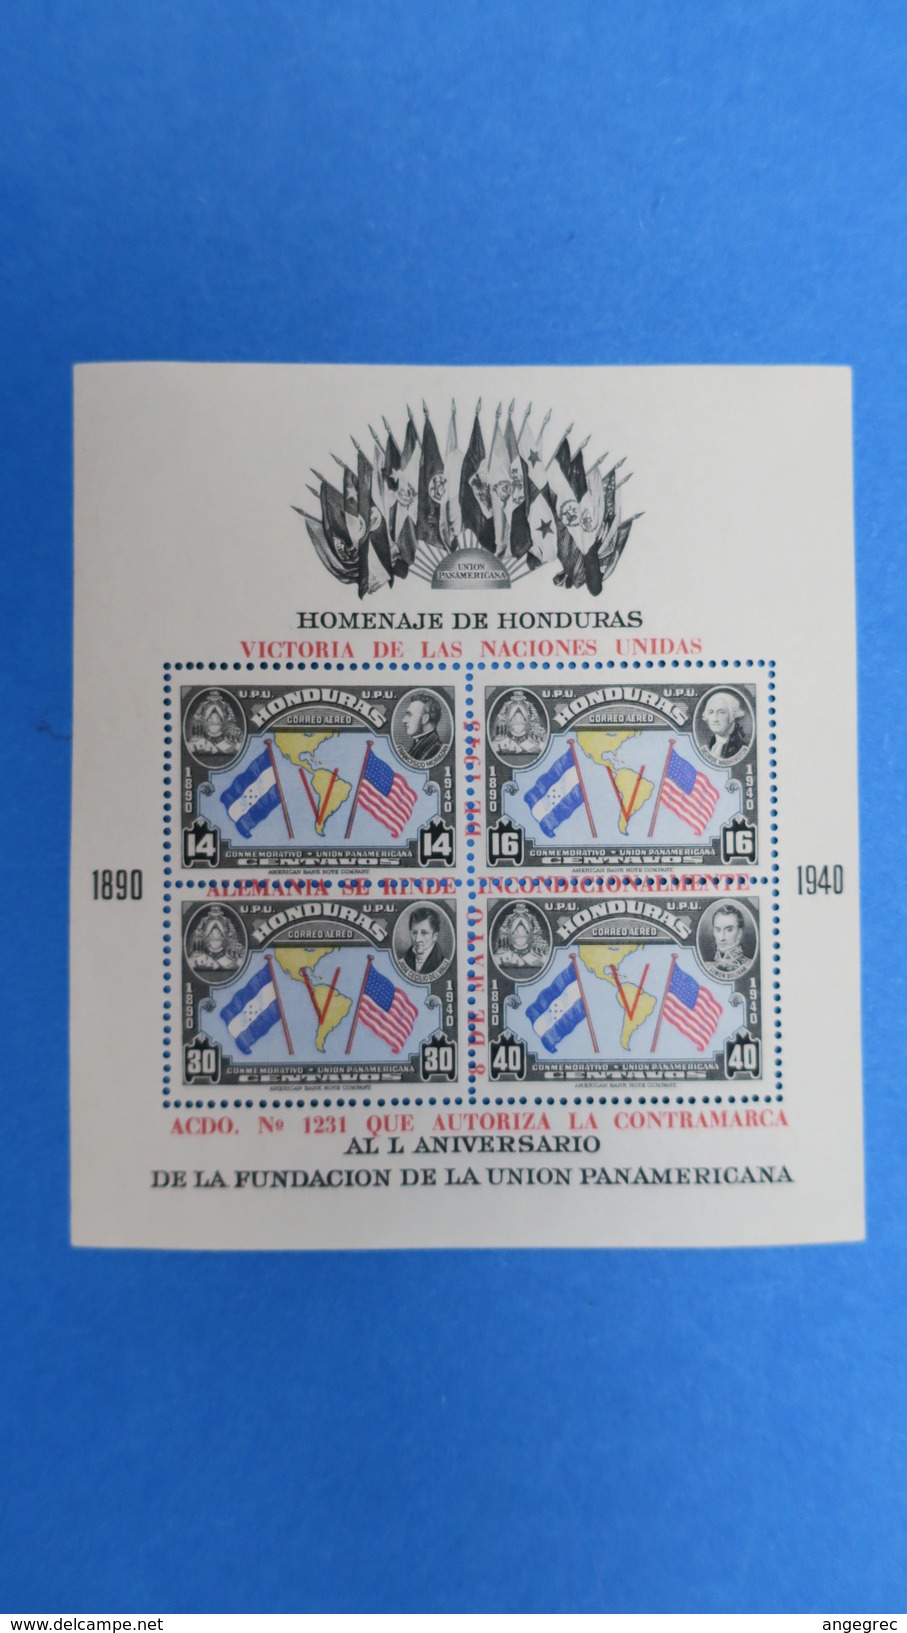 Honduras,  Bloc Feuillet De 4 Timbre  Homenaje De Honduras, Victiria De Las Naciones Unidas  1940   Neuf** - Honduras